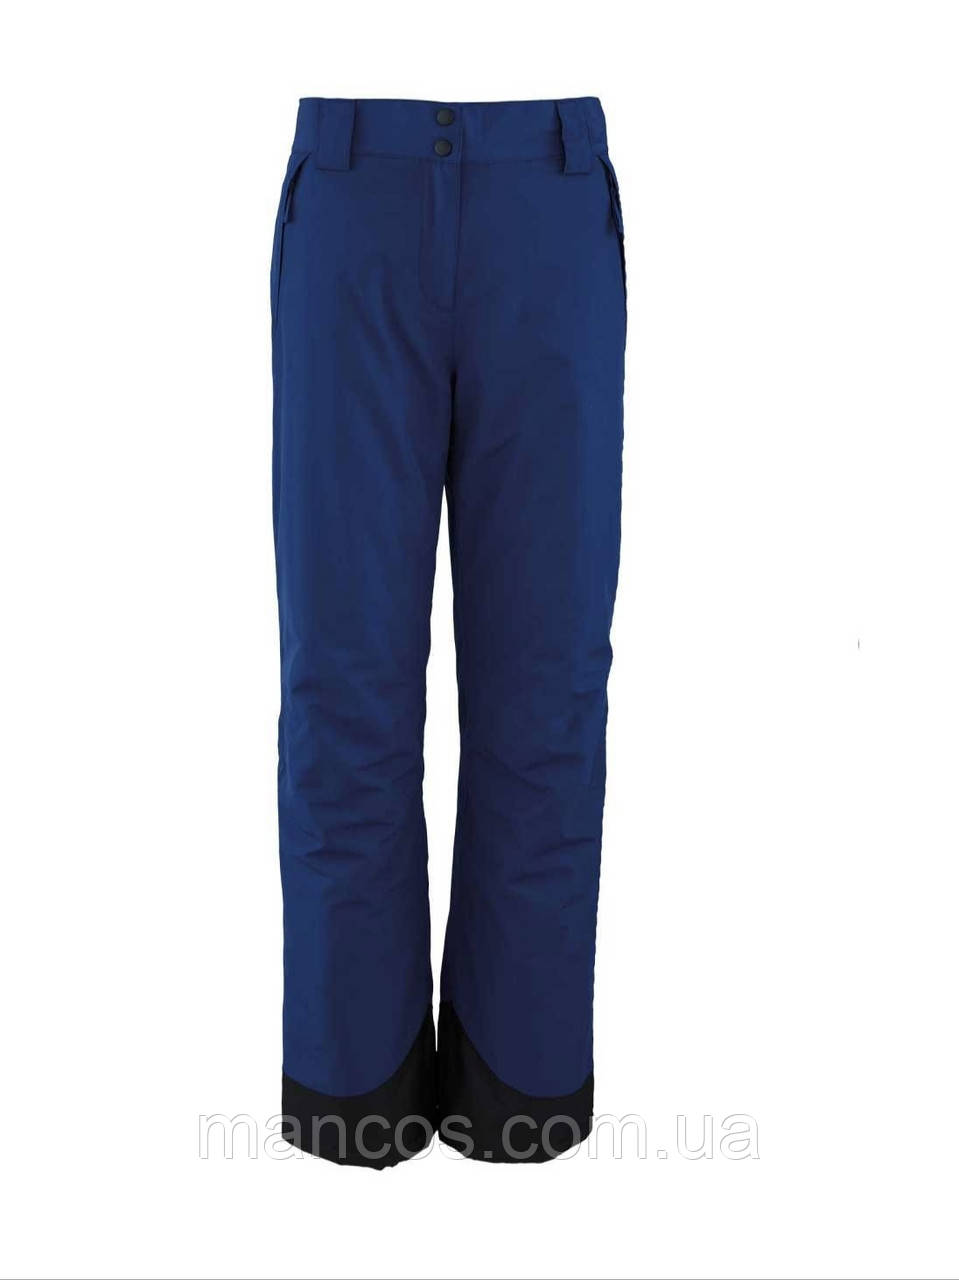 Жіночі лижні сині штани Crane гірськолижні штани Розмір 8 (S)